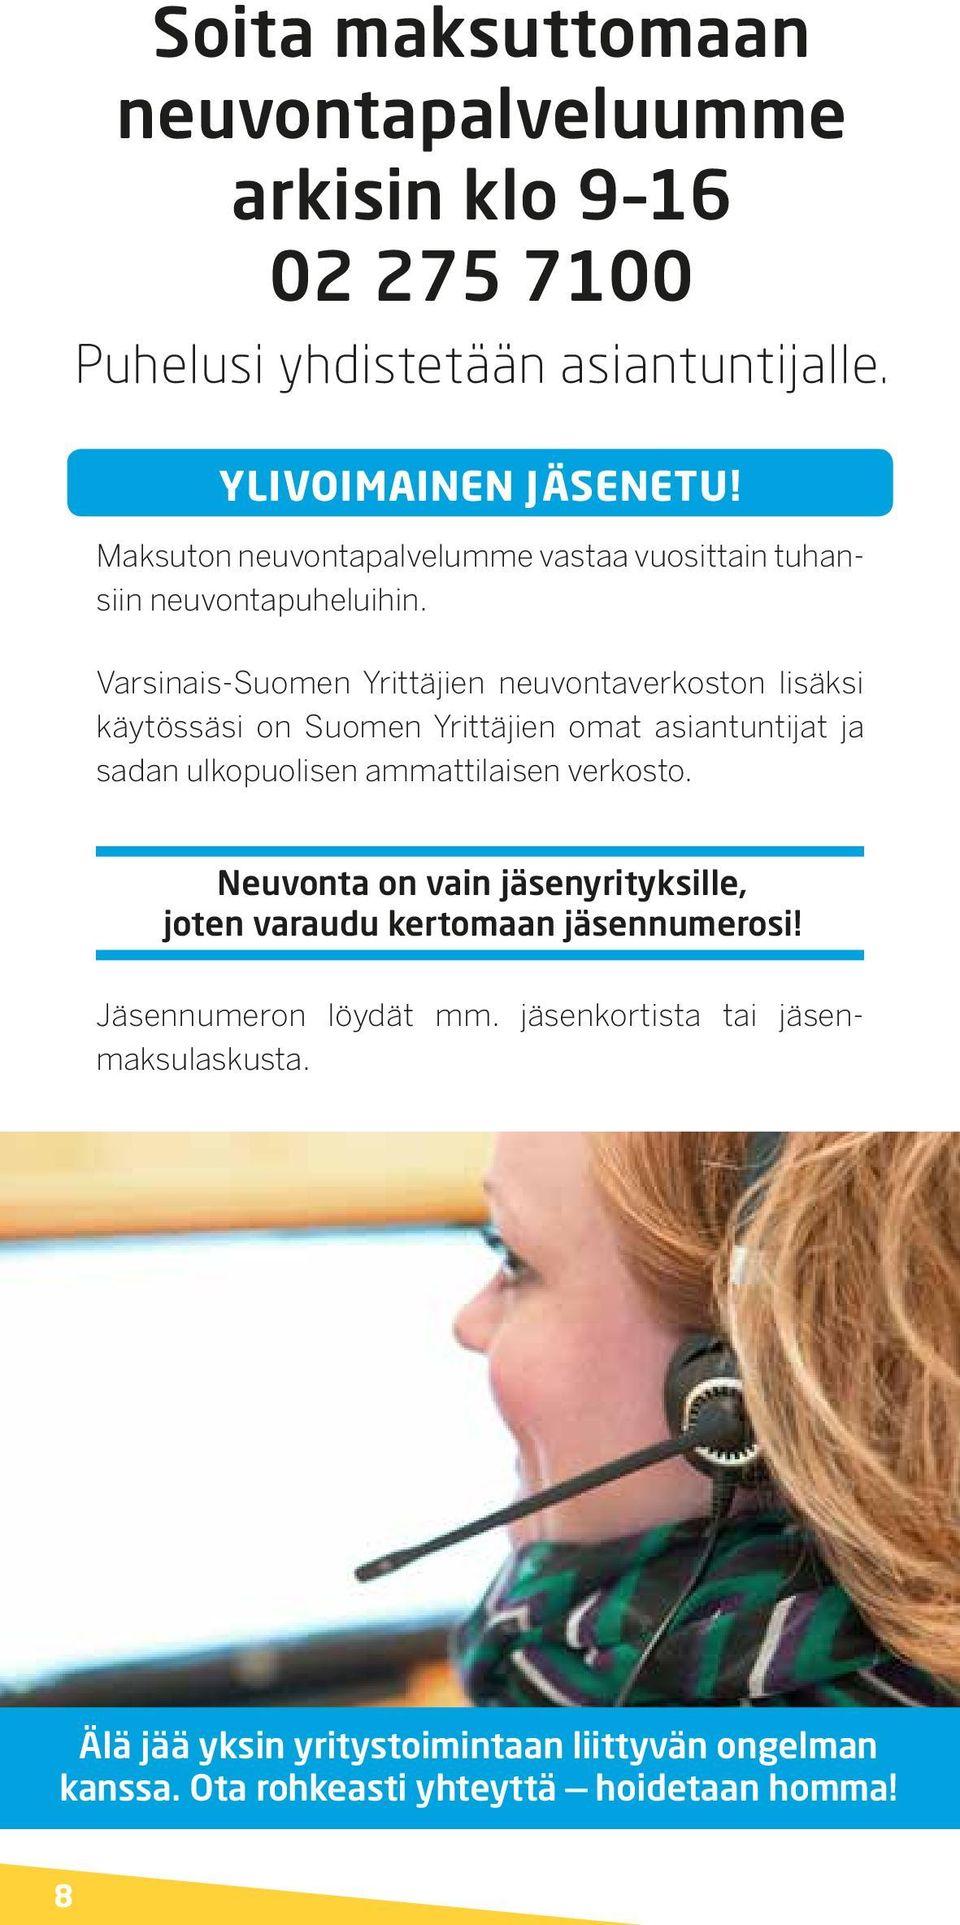 Varsinais-Suomen Yrittäjien neuvontaverkoston lisäksi käytössäsi on Suomen Yrittäjien omat asiantuntijat ja sadan ulkopuolisen ammattilaisen